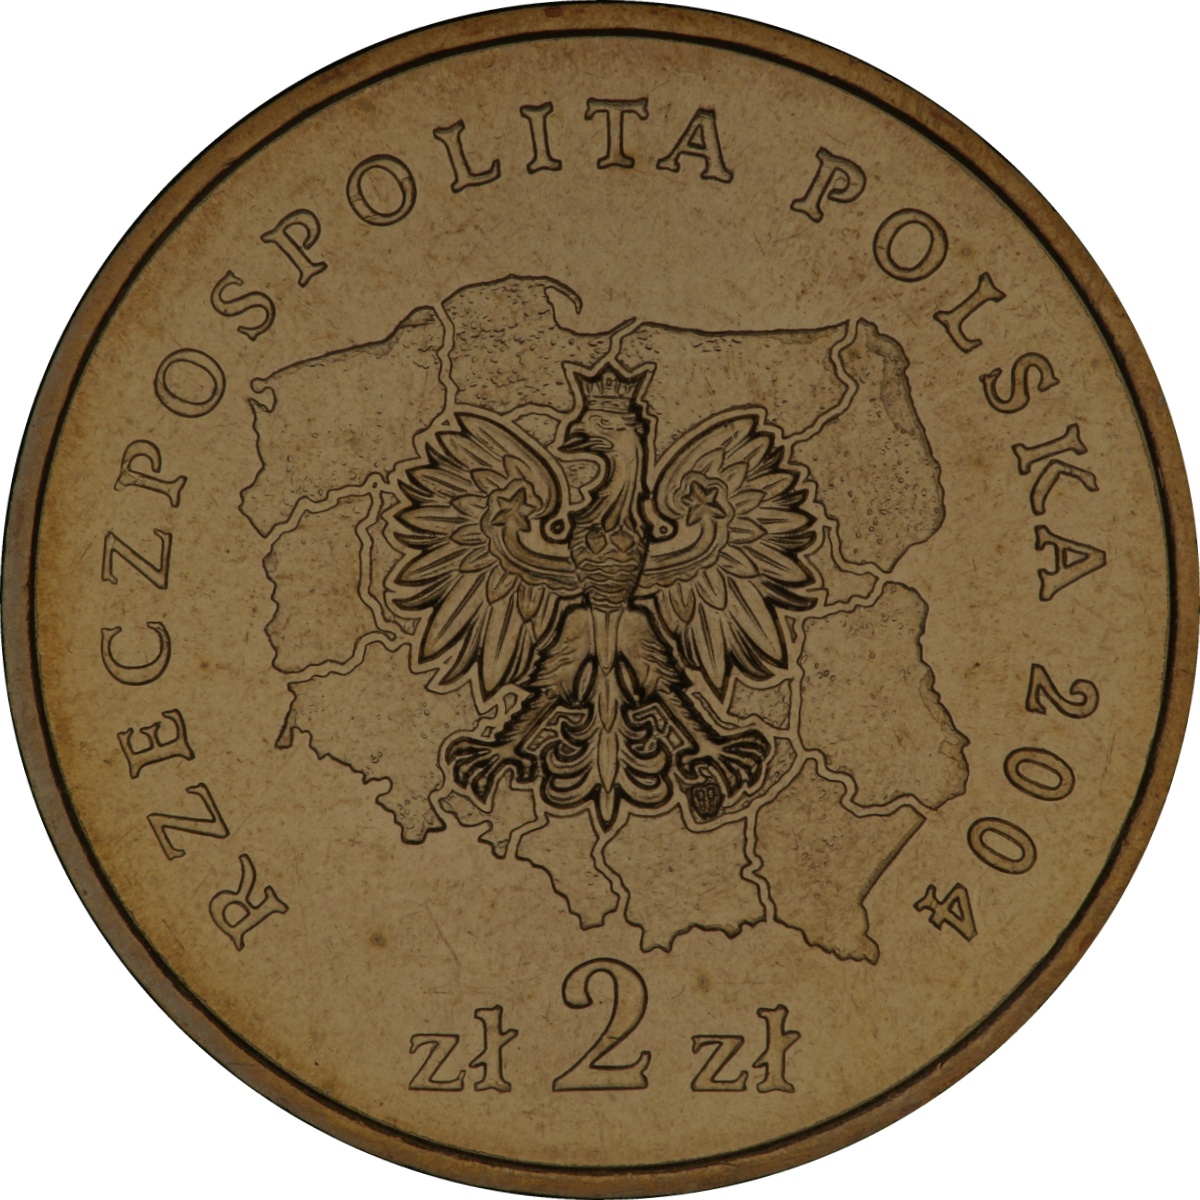 2zl-okolicznosciowe-wojewodztwo-lodzkie-awers-monety